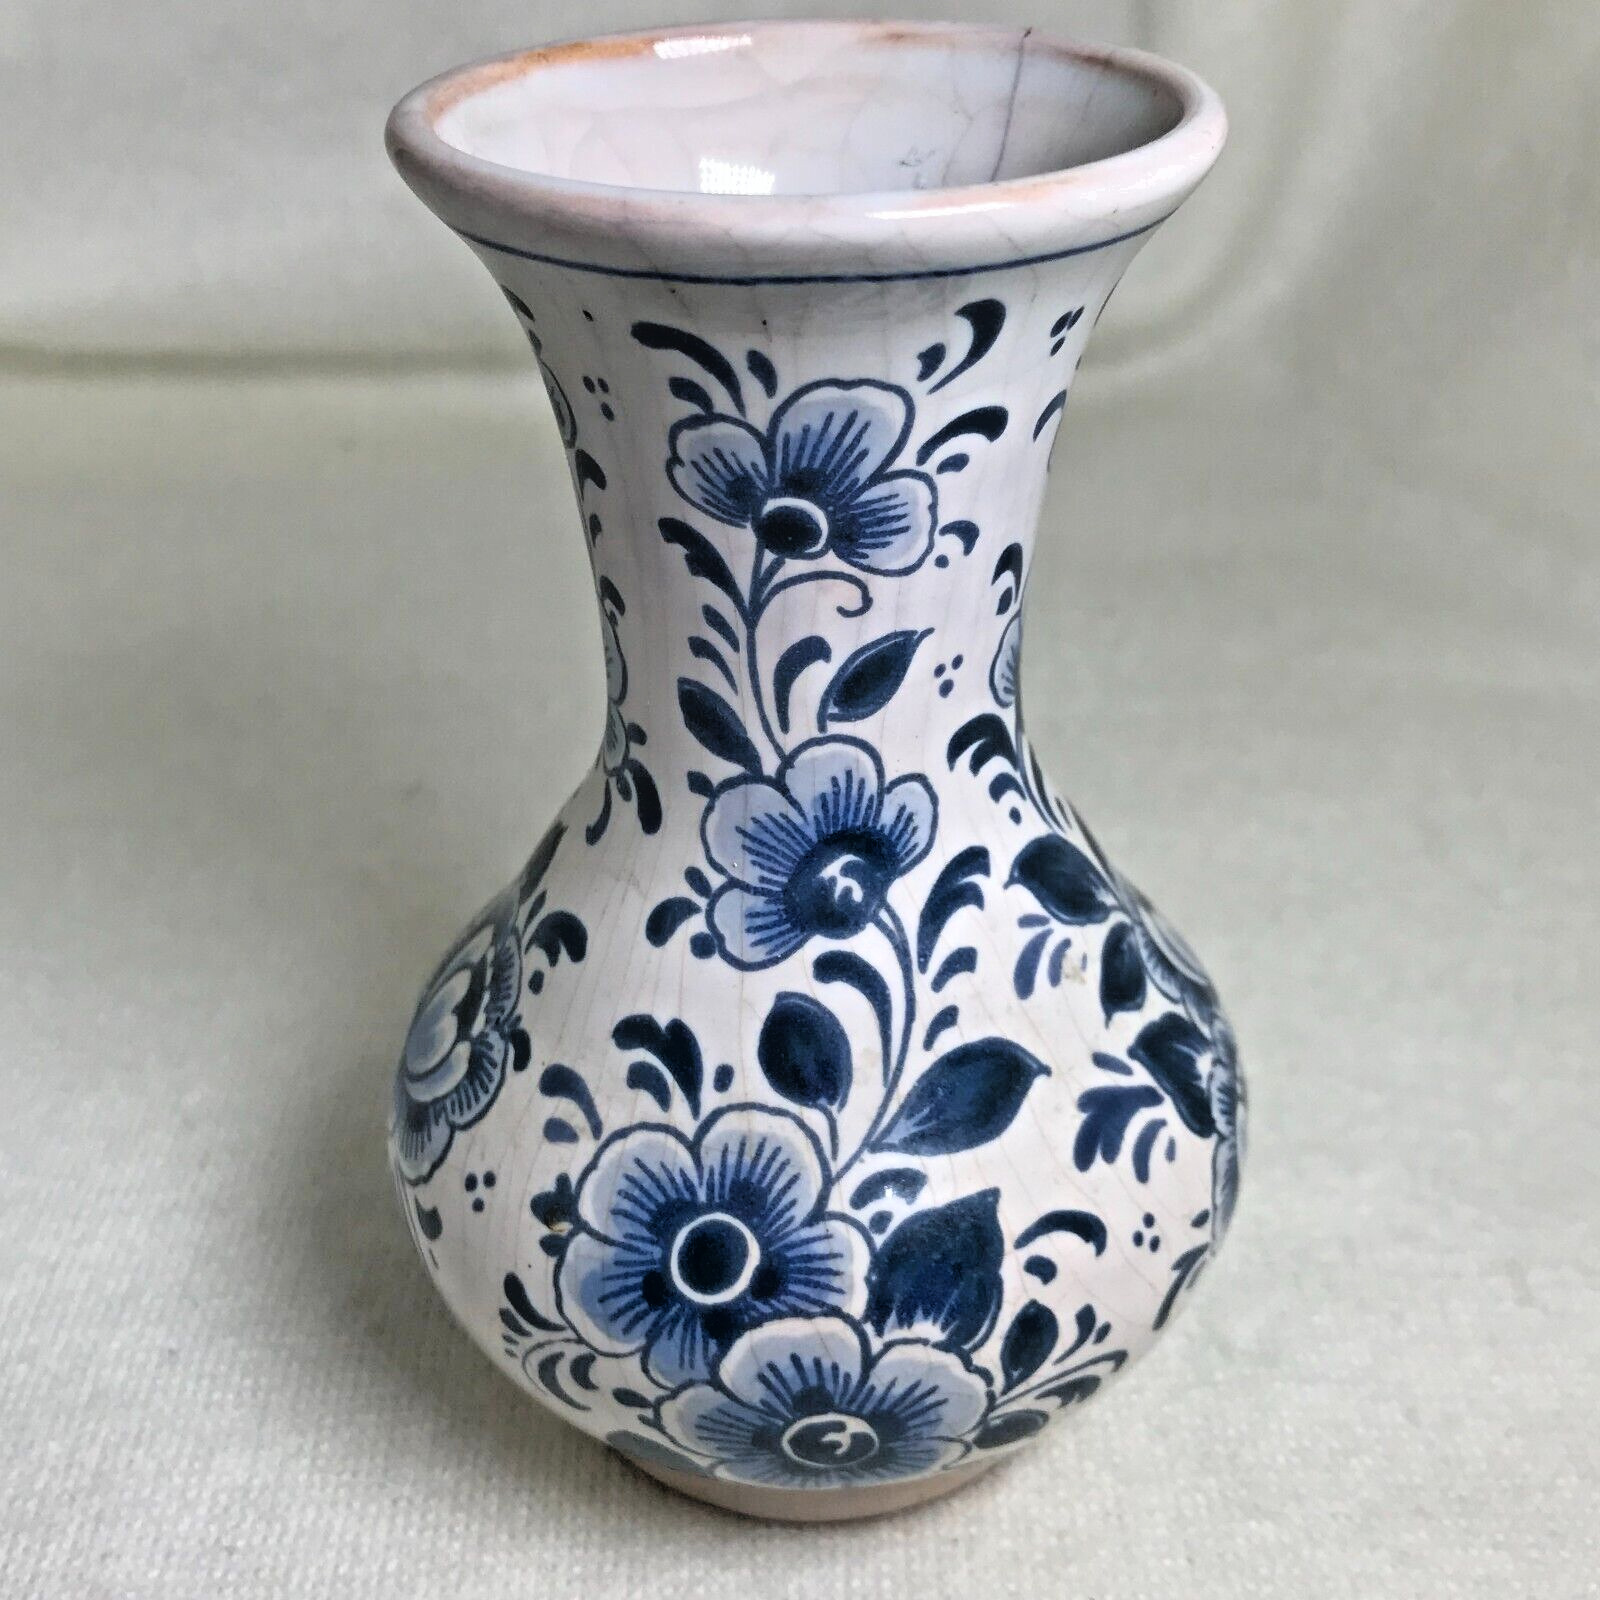 Delft Bud Vase - Dutch Blue & White Floral Pattern - Vintage - 4 1/2